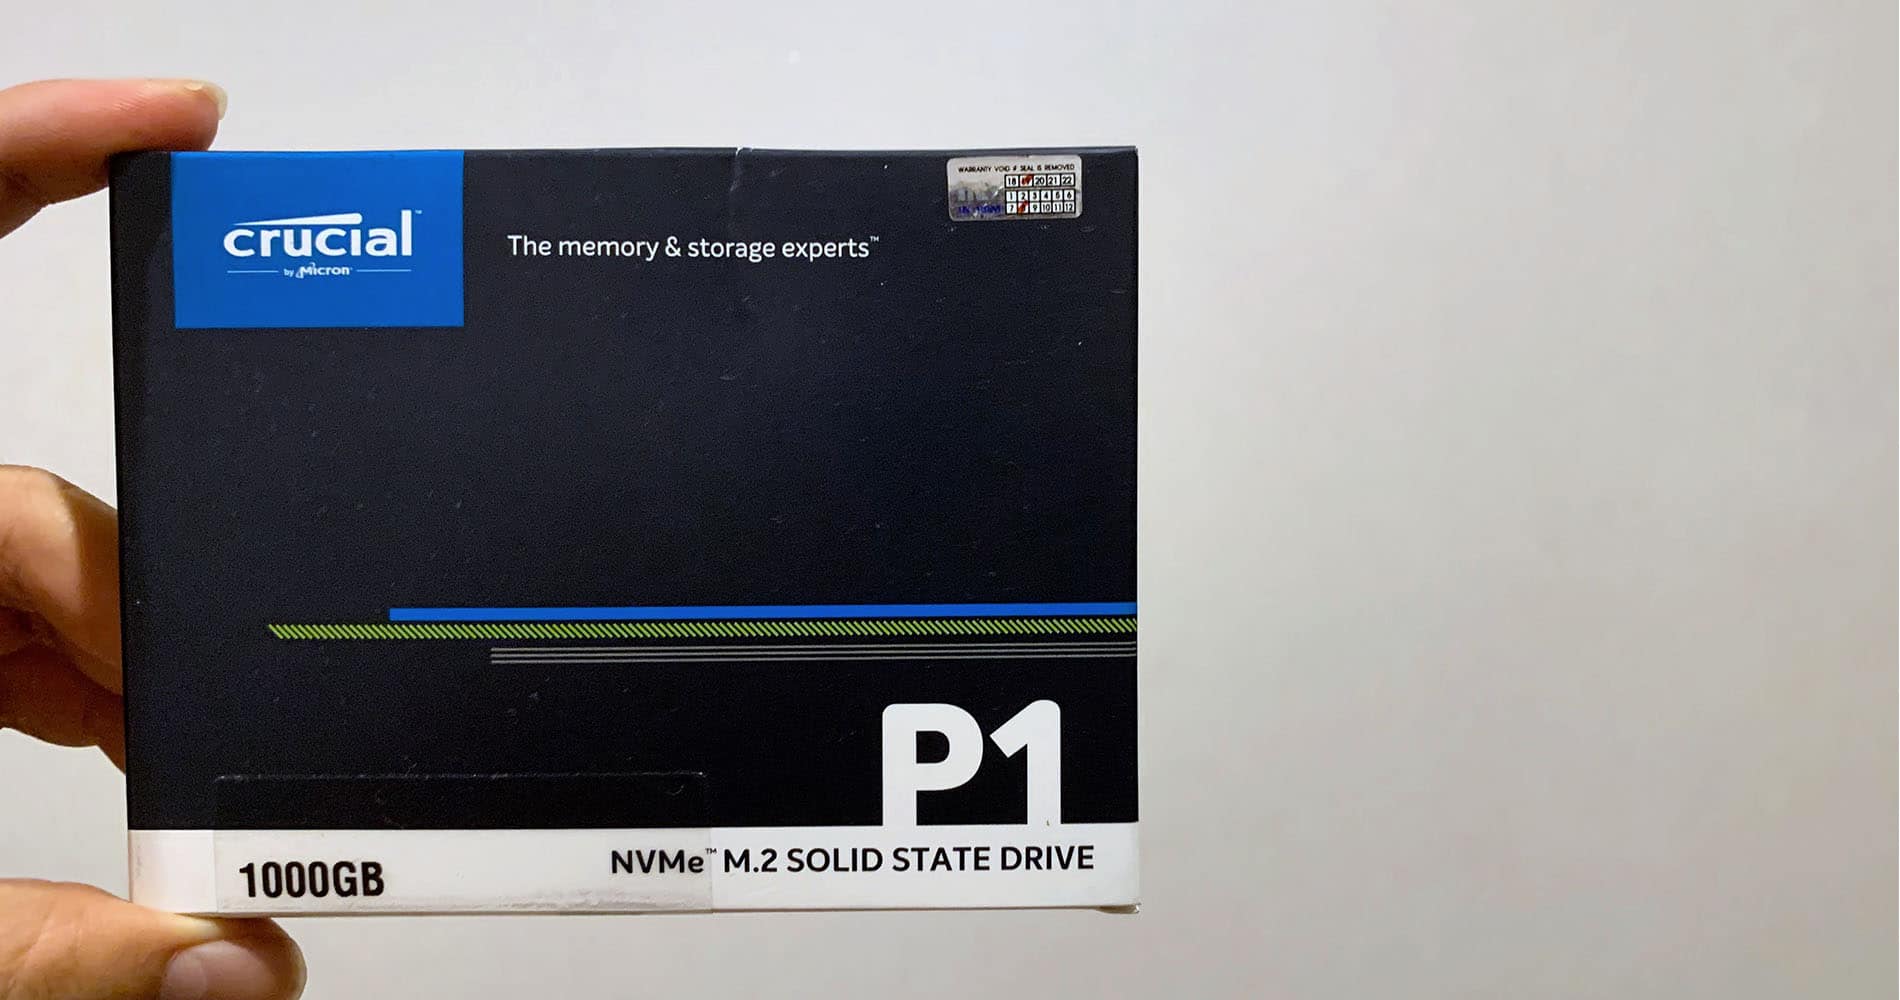 รีวิว Crucial P1 NVMe หน่วยความจำ SSD คุ้มราคา 1